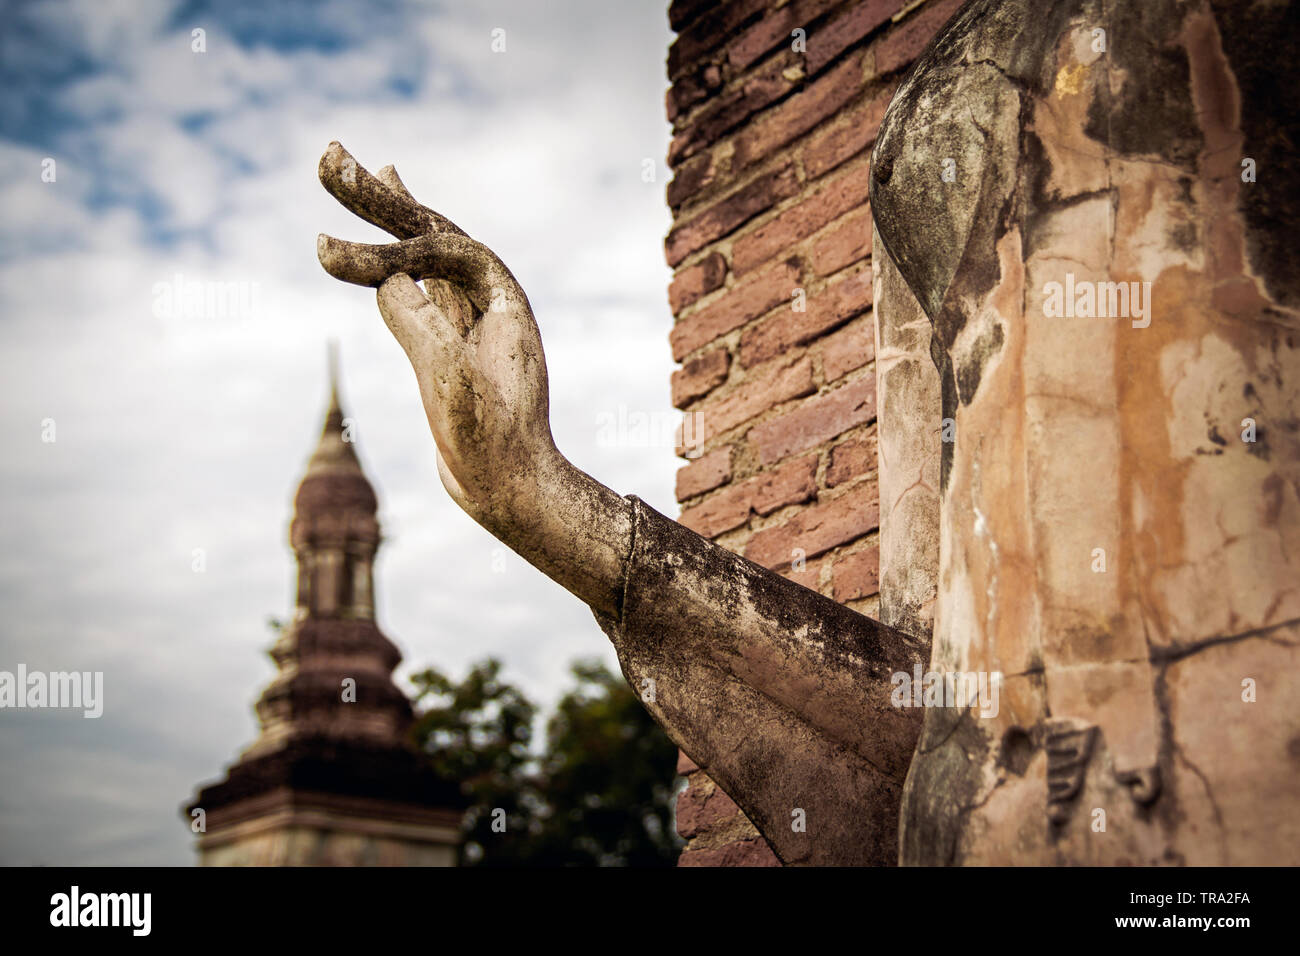 Statua di Buddha in Sukhothai parco storico con le dita in spirituale mudra gesto apparentemente toccando la guglia di un antico stupa in background Foto Stock